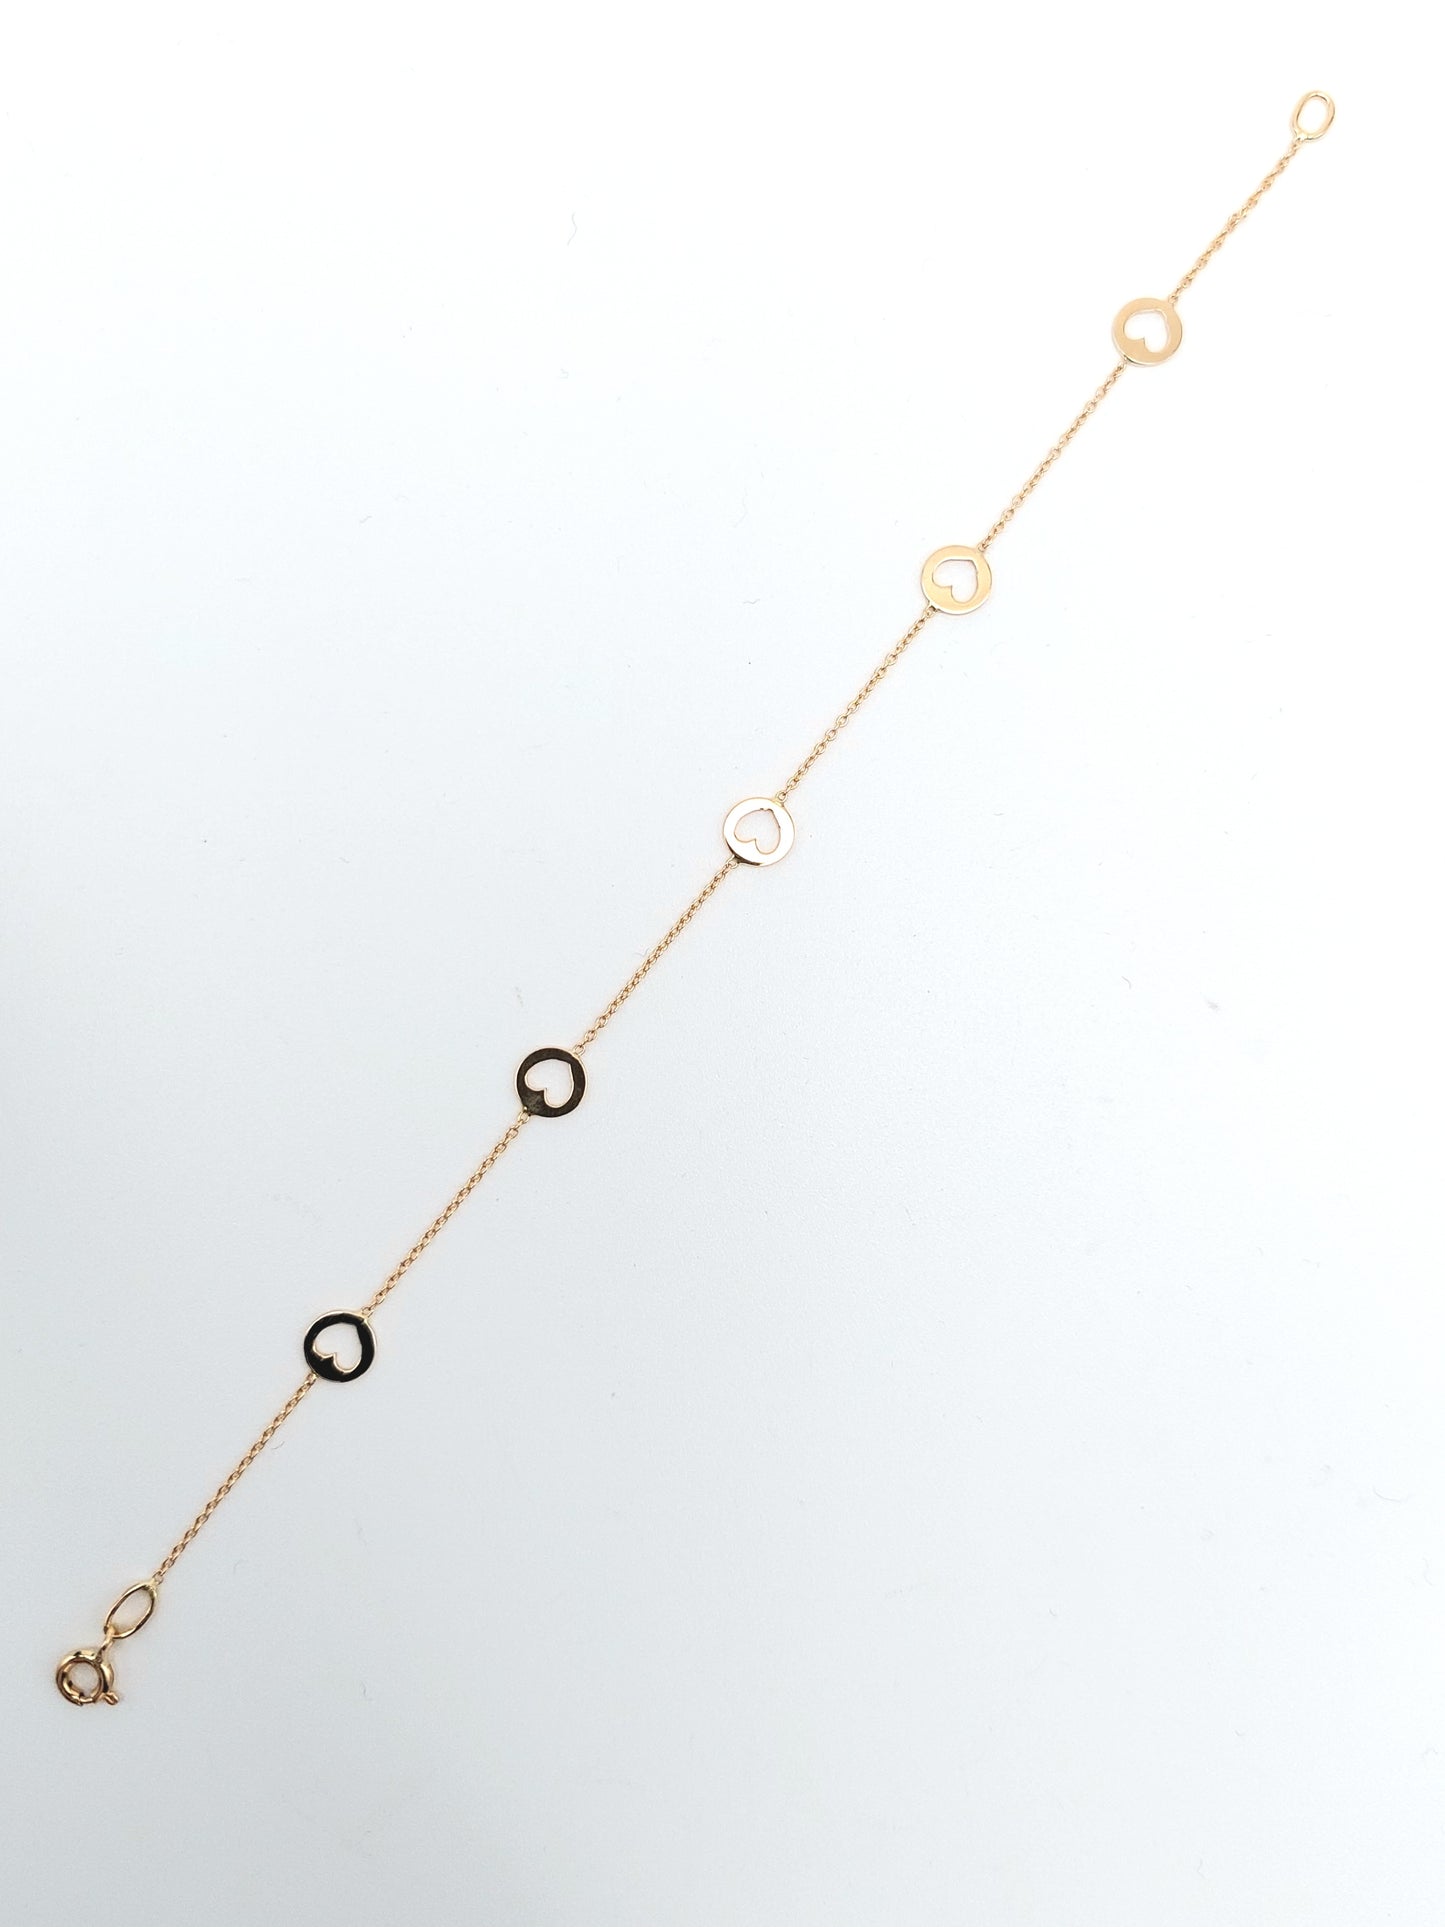 Bracciale da donna a catena con elementi a cuore in oro giallo 18 KT. BR-D-ORO048.